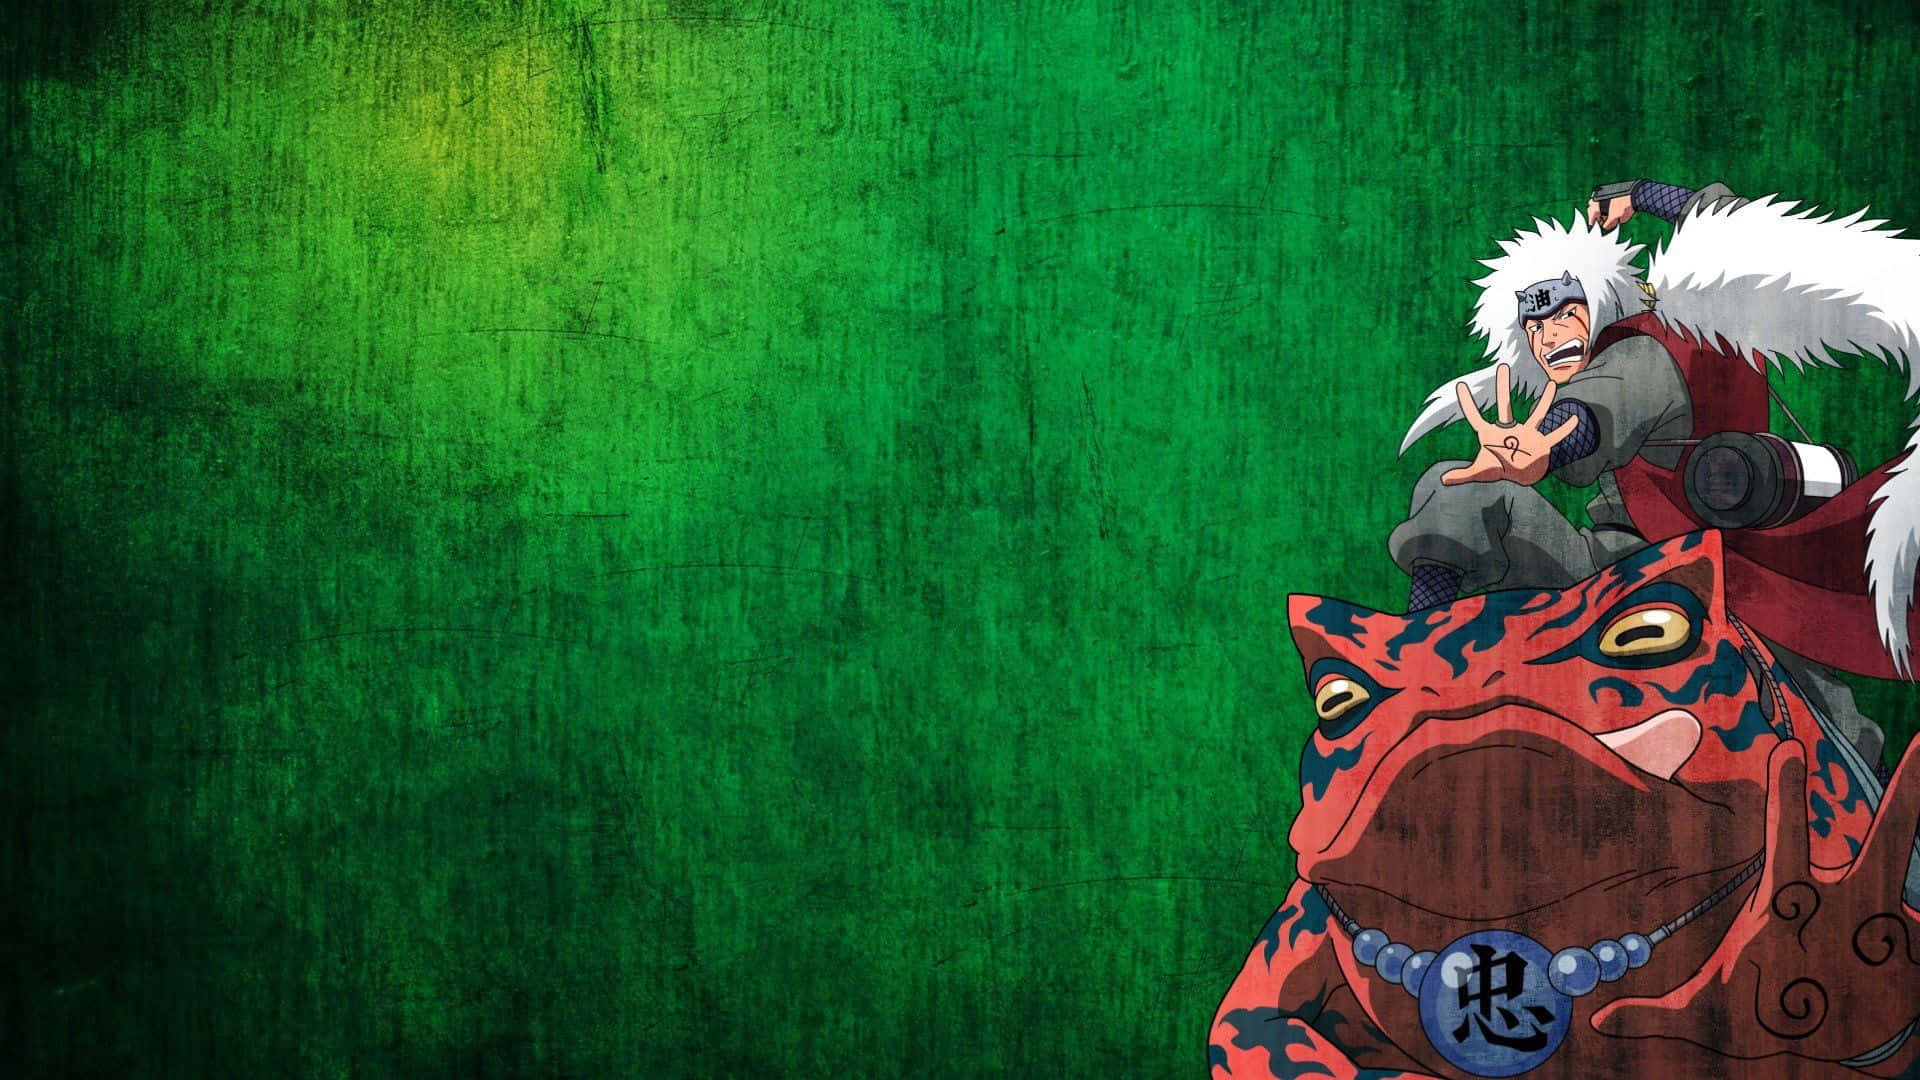 Green Anime Jiraiya And Gamabunta Wallpaper